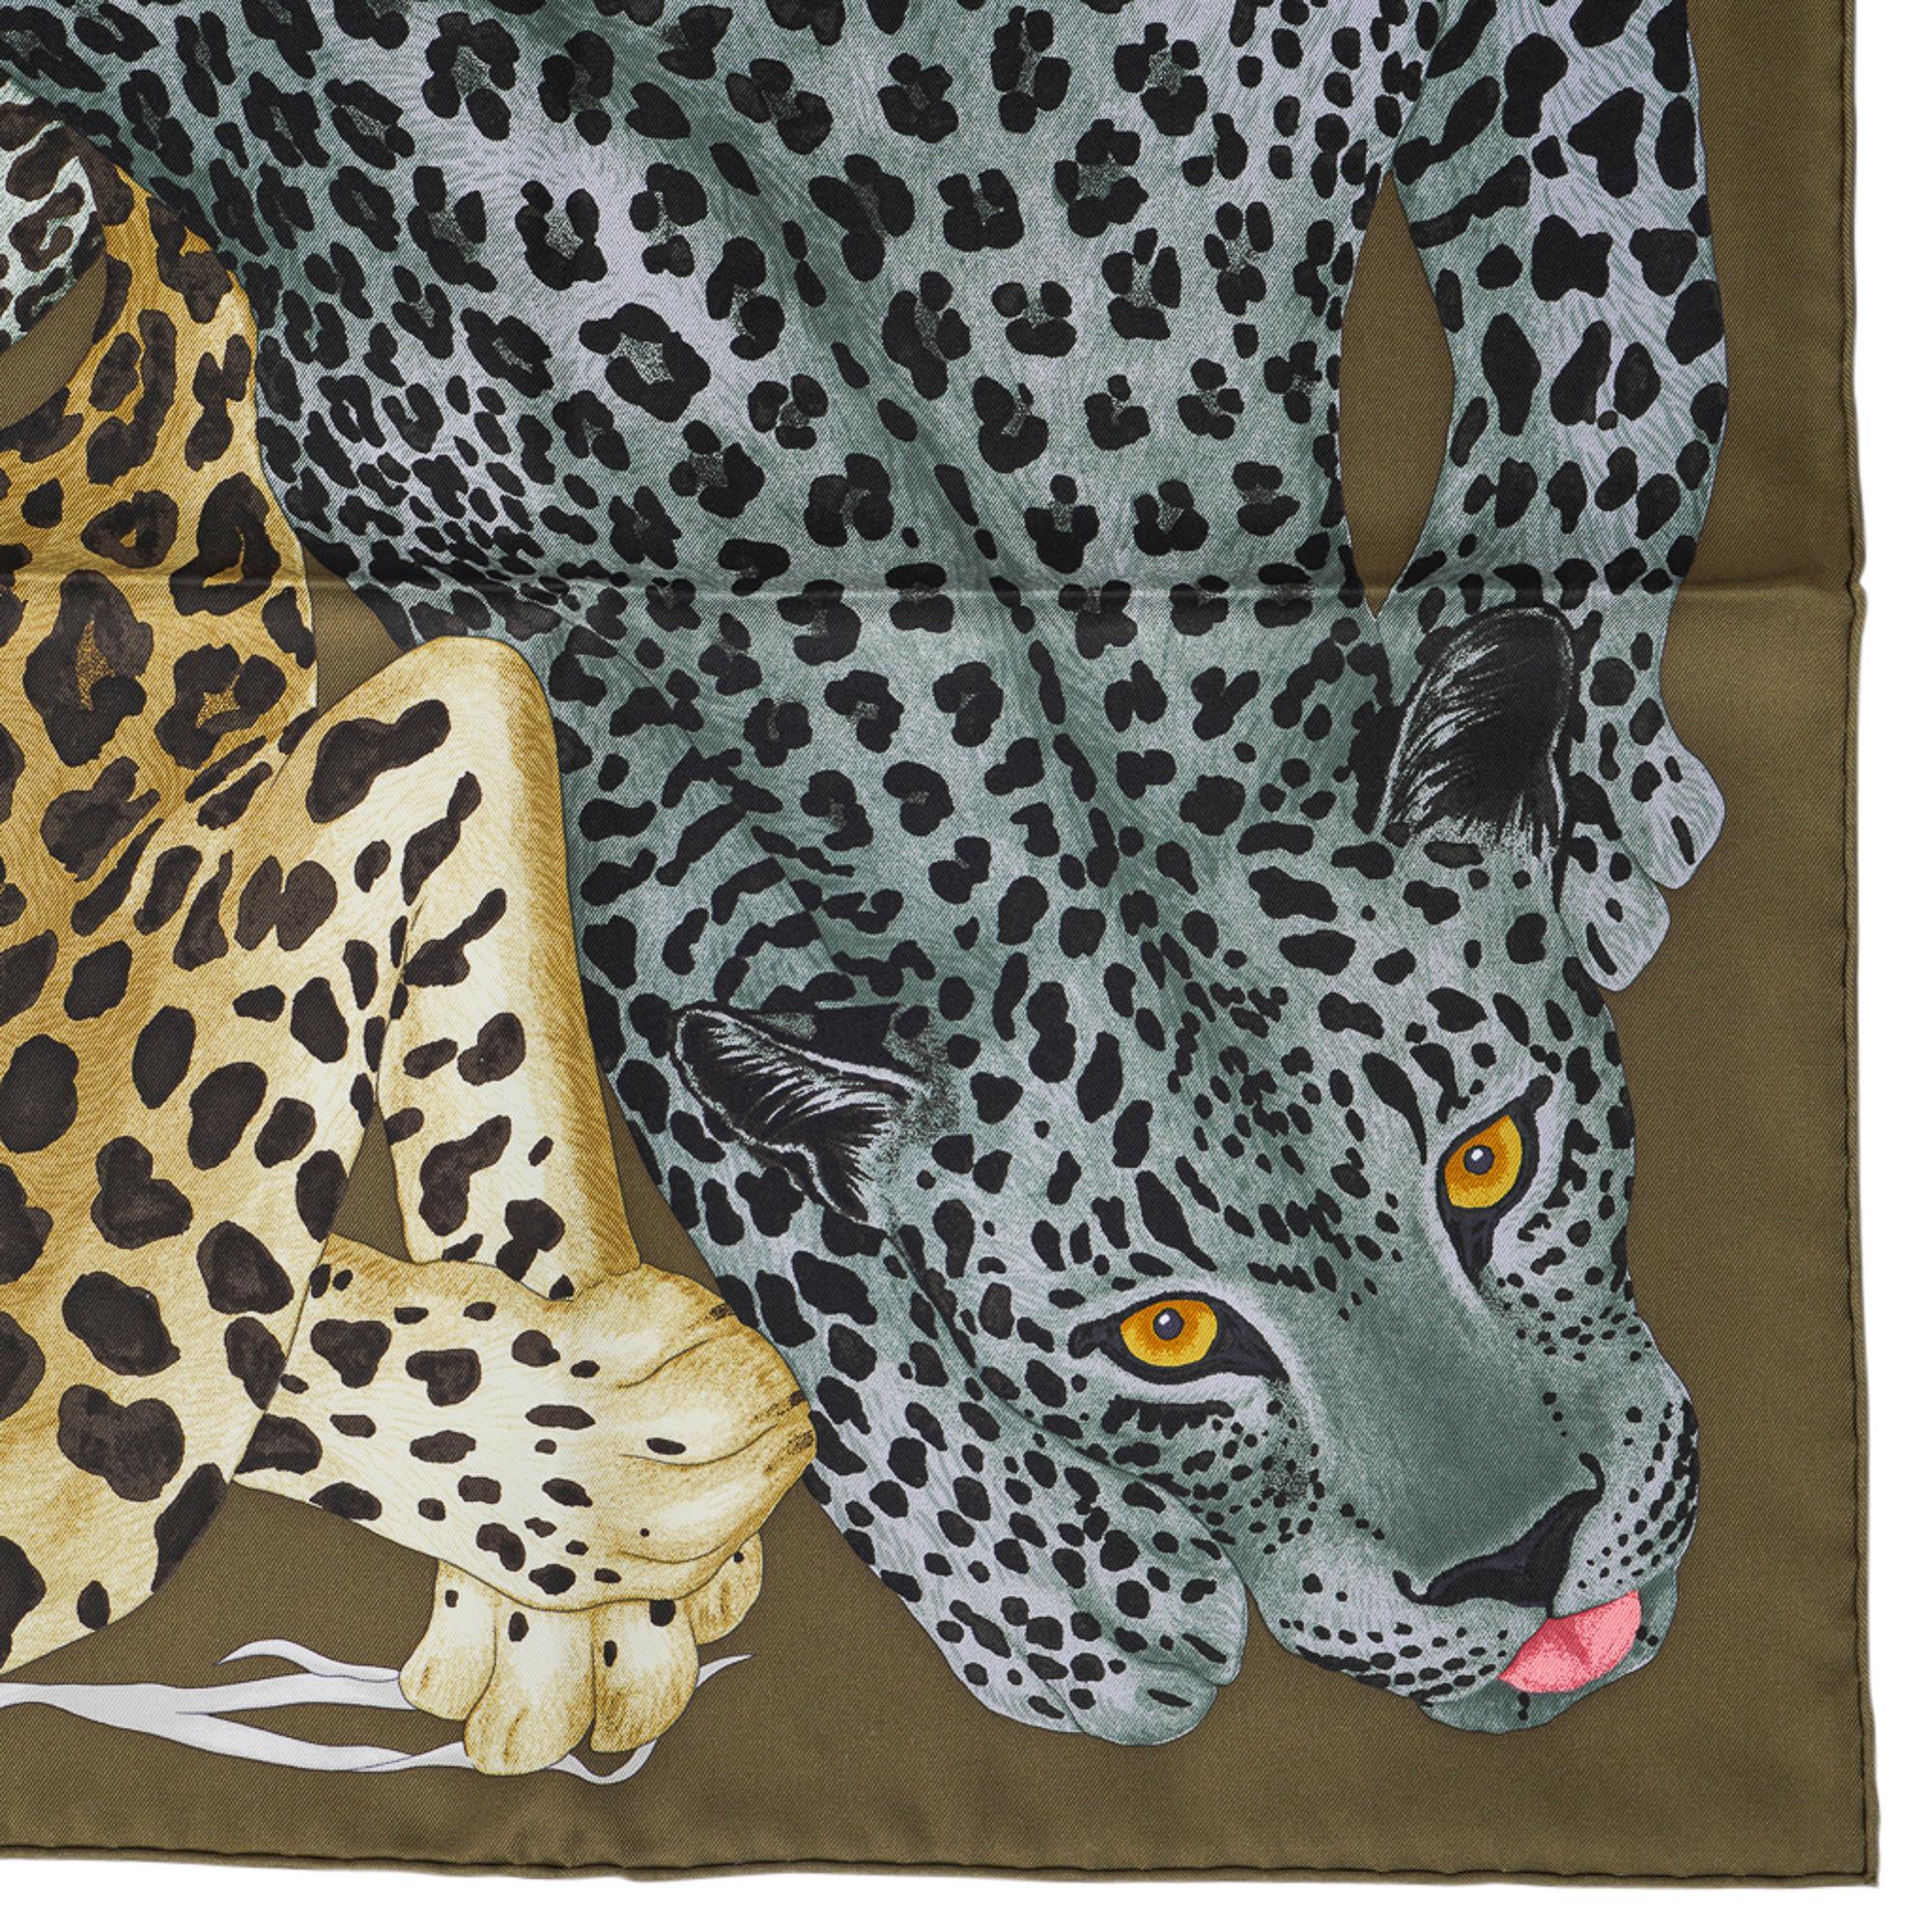 Mightychic bietet einen Hermes Lazy Leopardesses Seidenschal in den Farben Kaki Fonce, Anthrazit und Beige an.
Dieser exquisite Hermes-Schal stellt die anmutige Majestät von Katzen in Ruhe dar.
Entworfen von Arlette Ess.
Signatur handgerollter